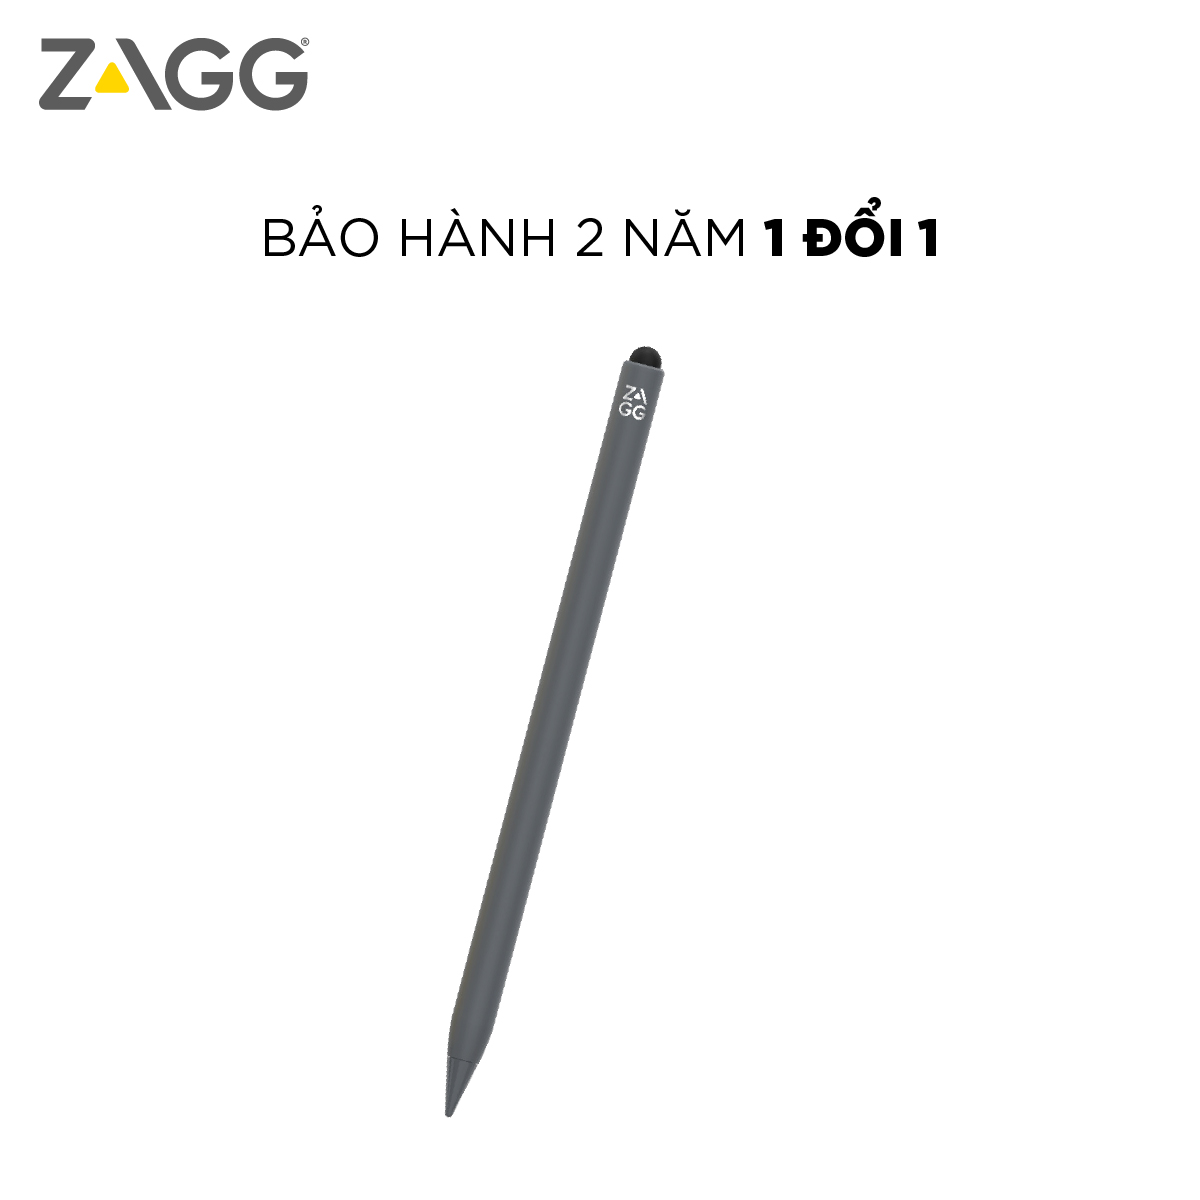 Bút cảm ứng ZAGG Pro Stylus 2 Pencil sử dụng cho Ipad -Thế hệ mới - Hàng chính hãng - Bảo hành 2 năm